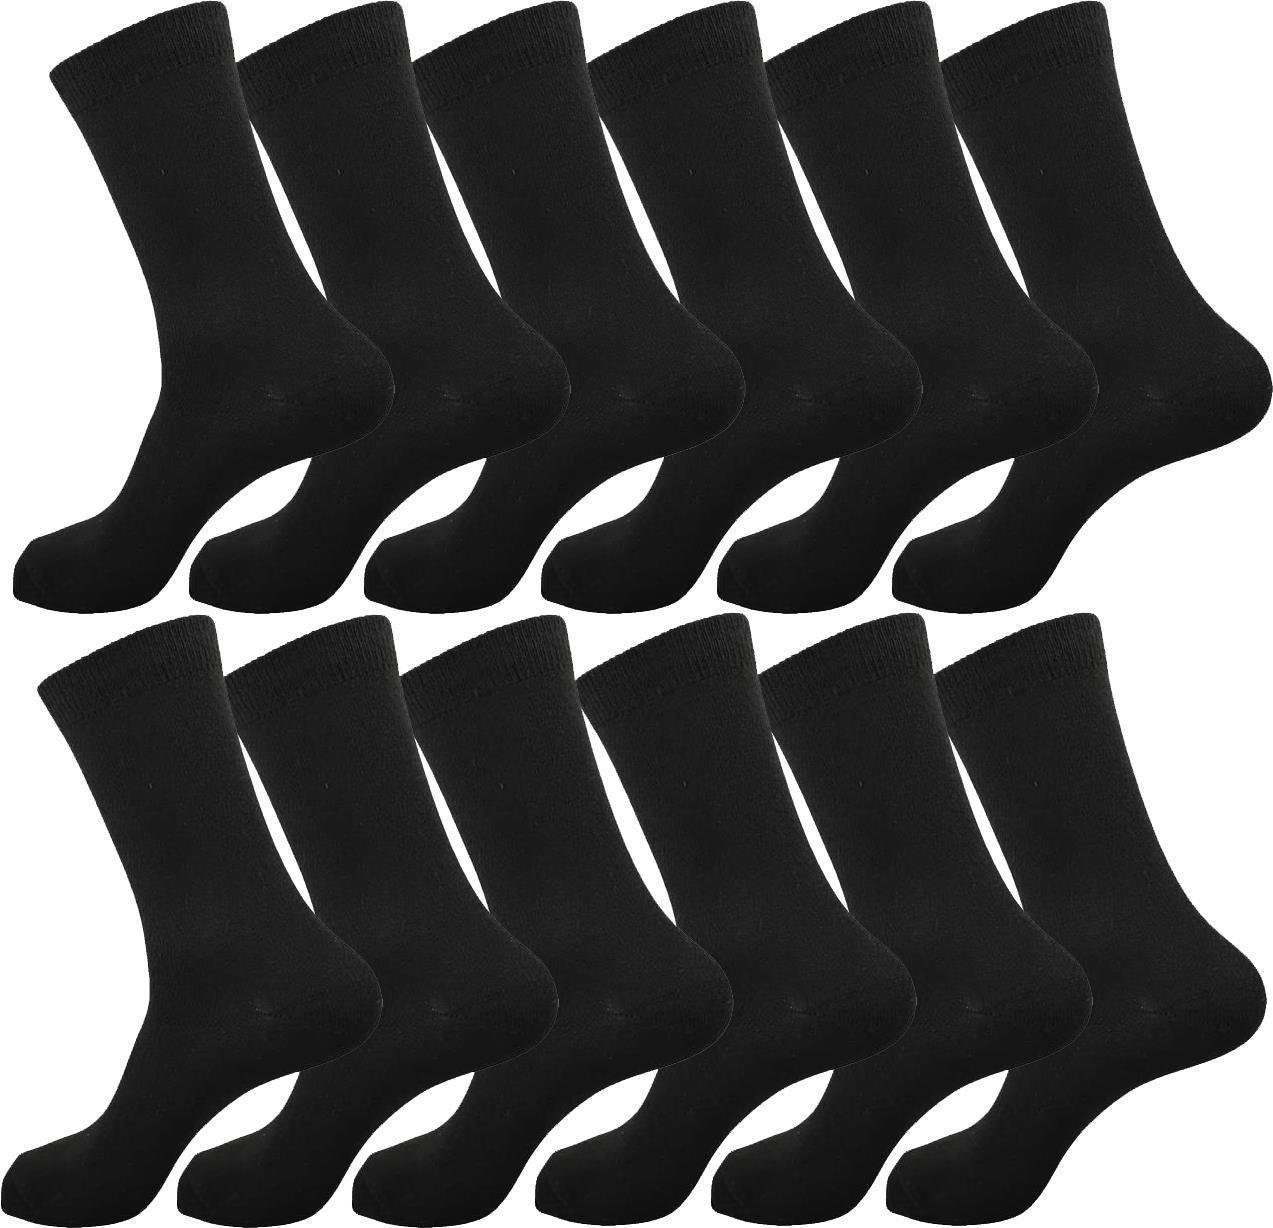 EloModa Basicsocken 12, 24 Paar Herren Socken in schwarz, 39-42 43-46 (12-Paar)